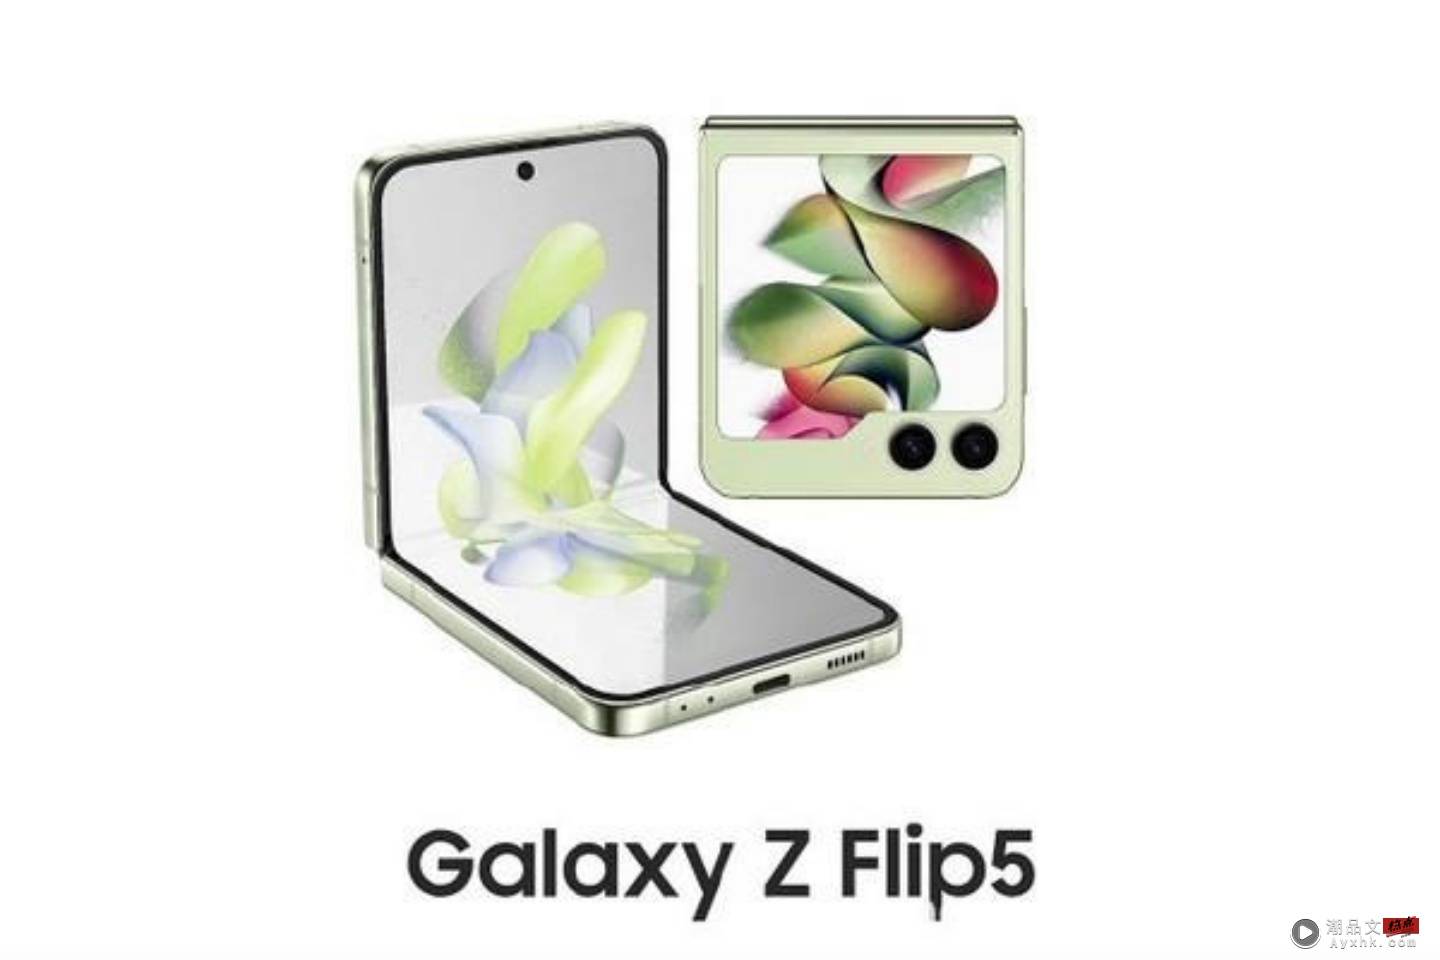 三星 Galaxy Z Flip5 传将会有最大外萤幕！不规则尺寸封面萤幕将超越 OPPO Find N2 Flip？ 数码科技 图1张